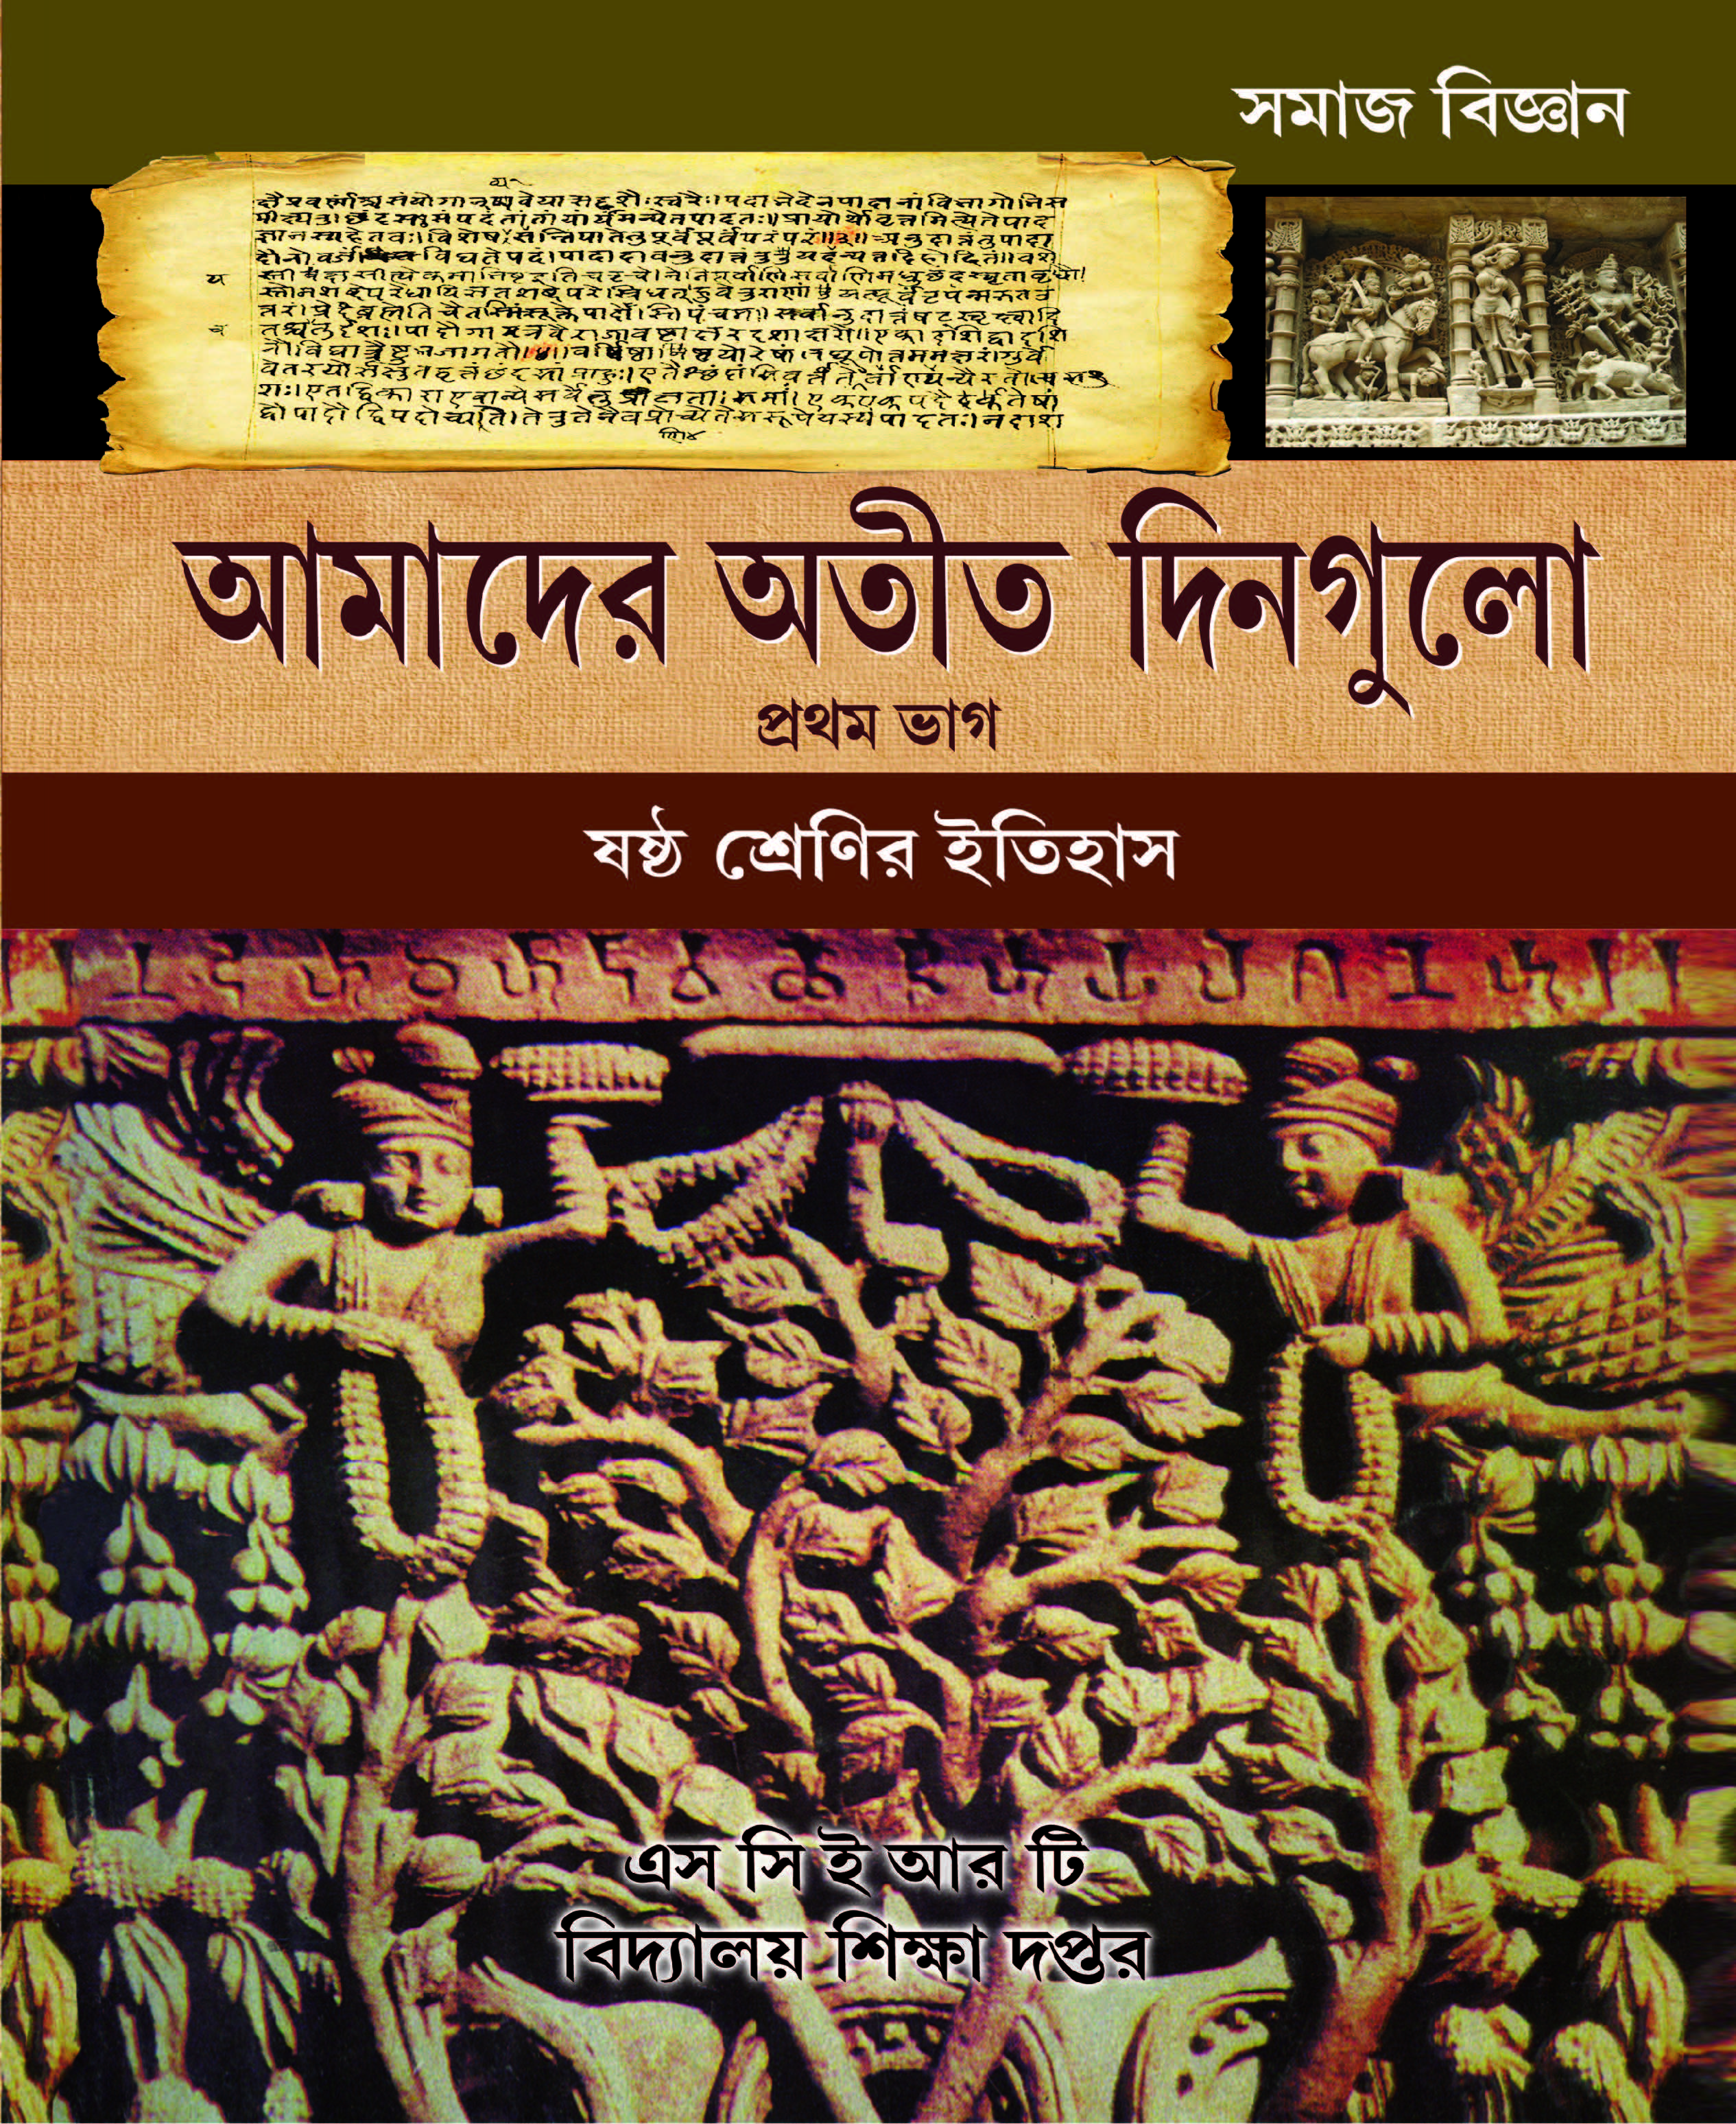 সমাজ বিজ্ঞান, আমাদের অতীত দিনগুলো, প্রথম ভাগ, ষষ্ঠ শ্রেণির ইতিহাস | Somaj Vigyan, Amader Otit Dingulo, Part 1, History, Class- VI